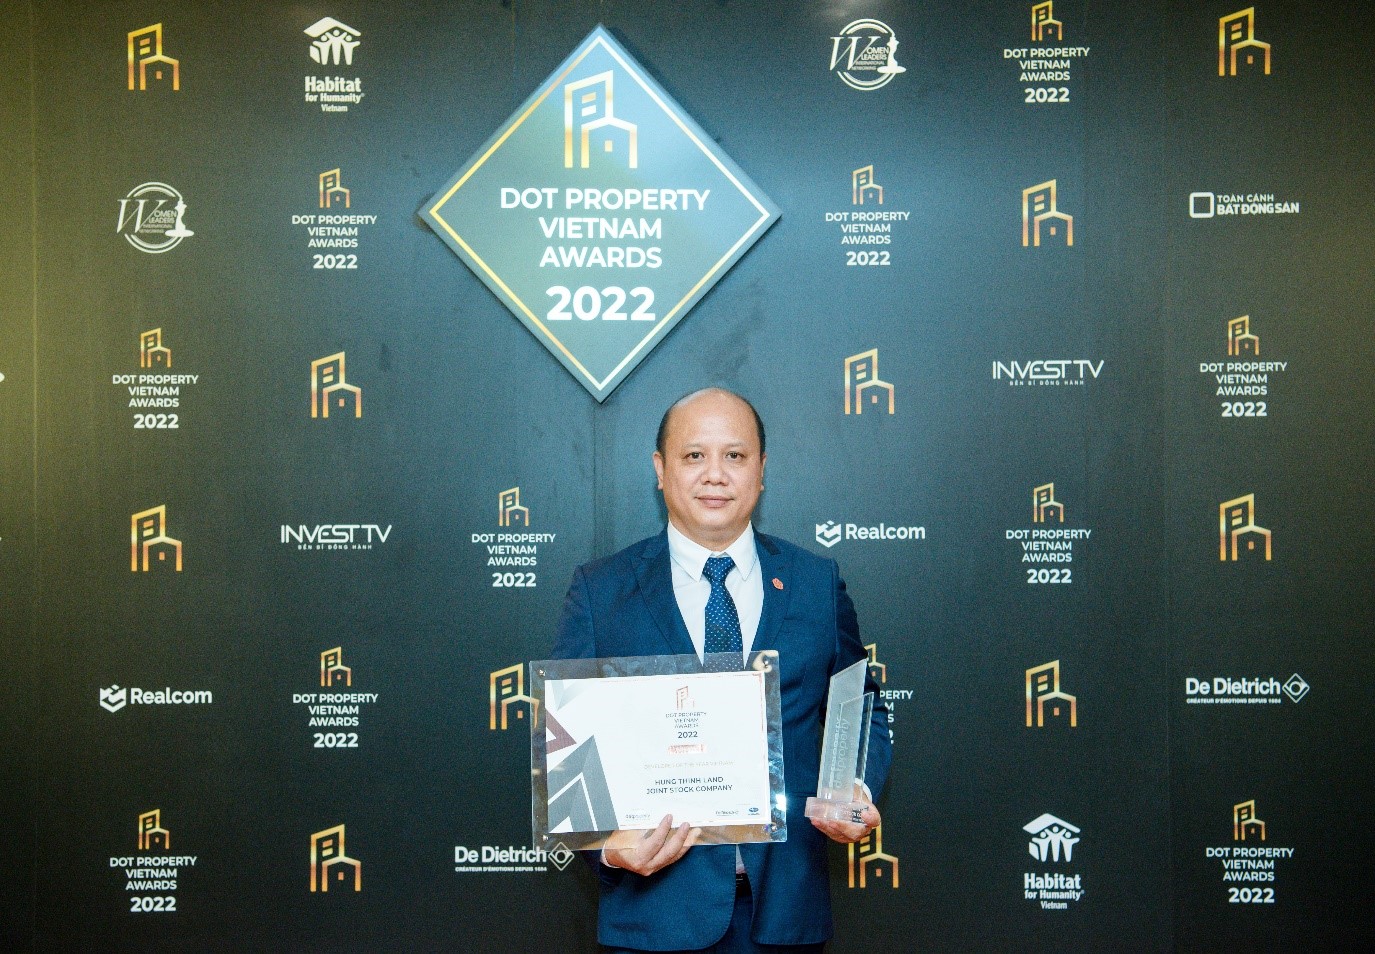 Hưng Thịnh Land giành 2 giải thưởng danh giá của Dot Property Vietnam Awards 2022 